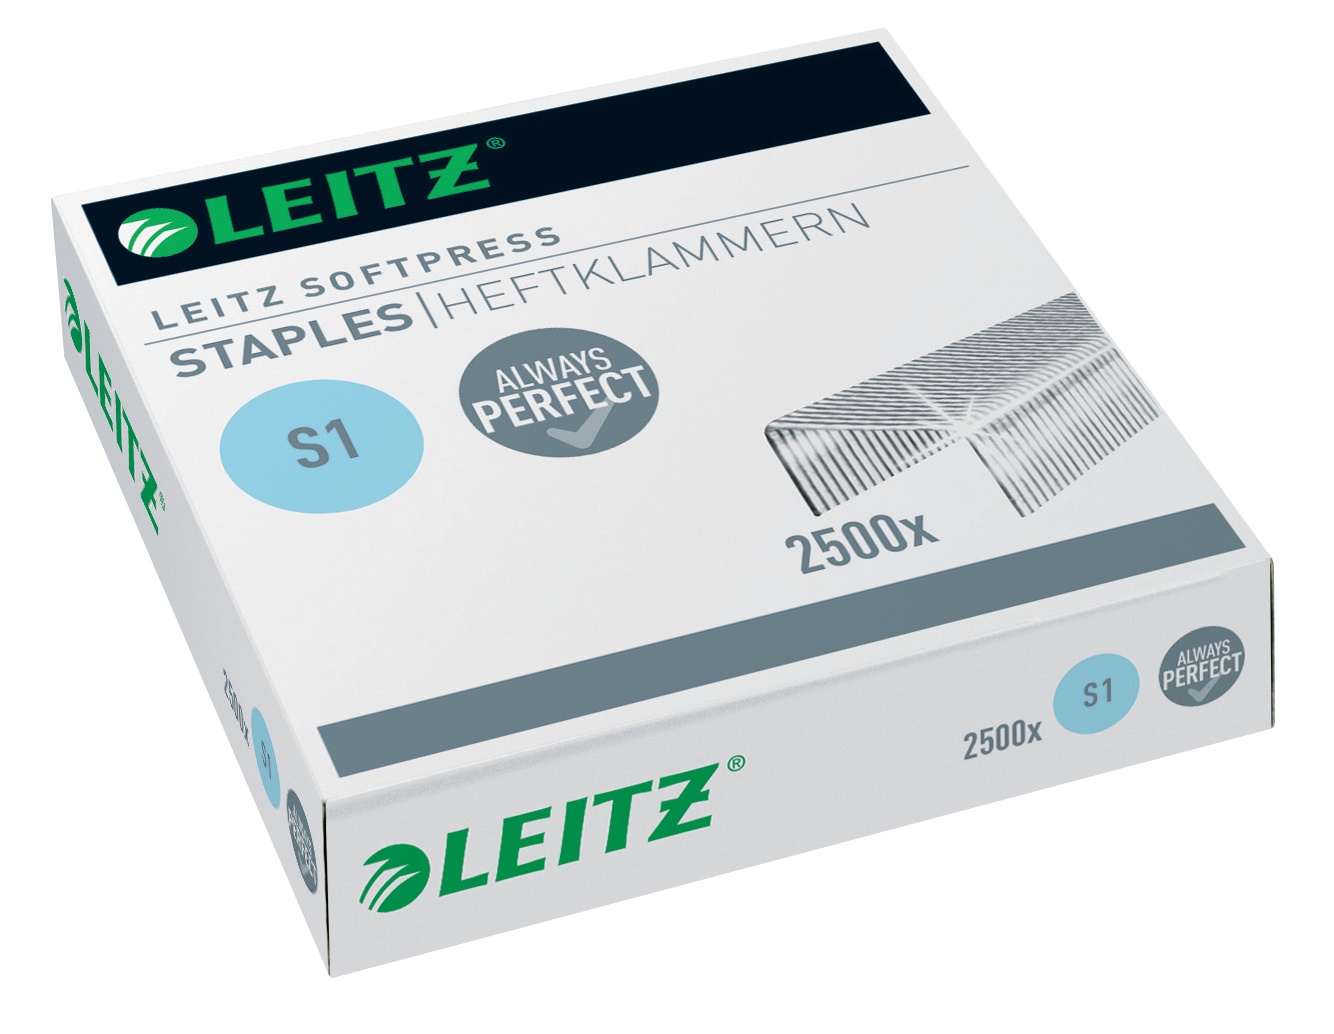 Скобы для степлера Leitz Softpress оцинкованные, (до 30 листов), 2500 штук